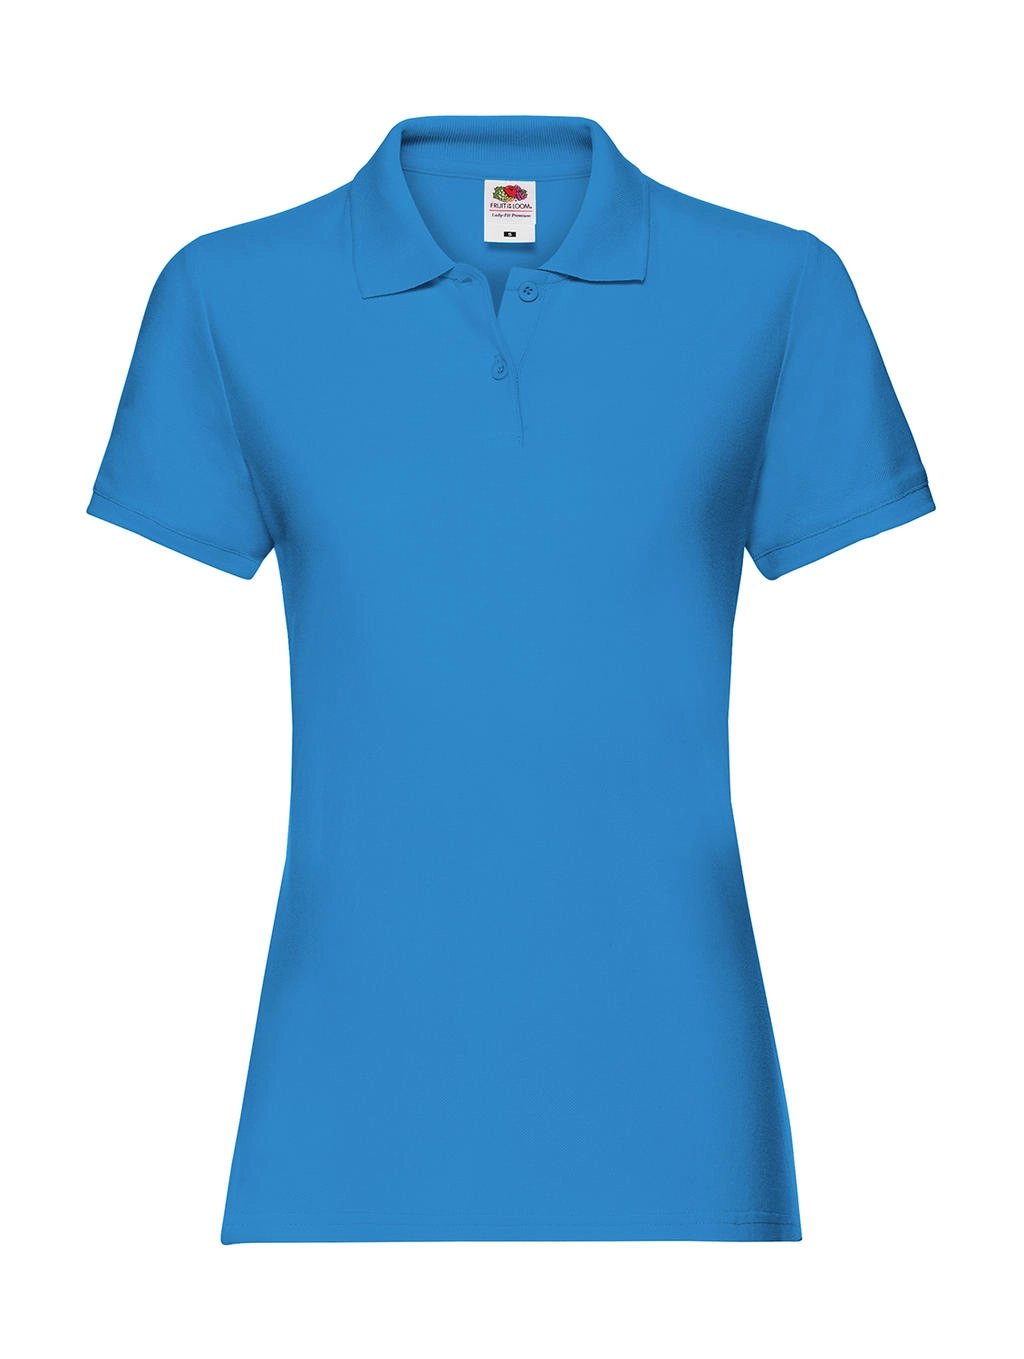 Ladies` Premium Polo zum Besticken und Bedrucken in der Farbe Azure Blue mit Ihren Logo, Schriftzug oder Motiv.